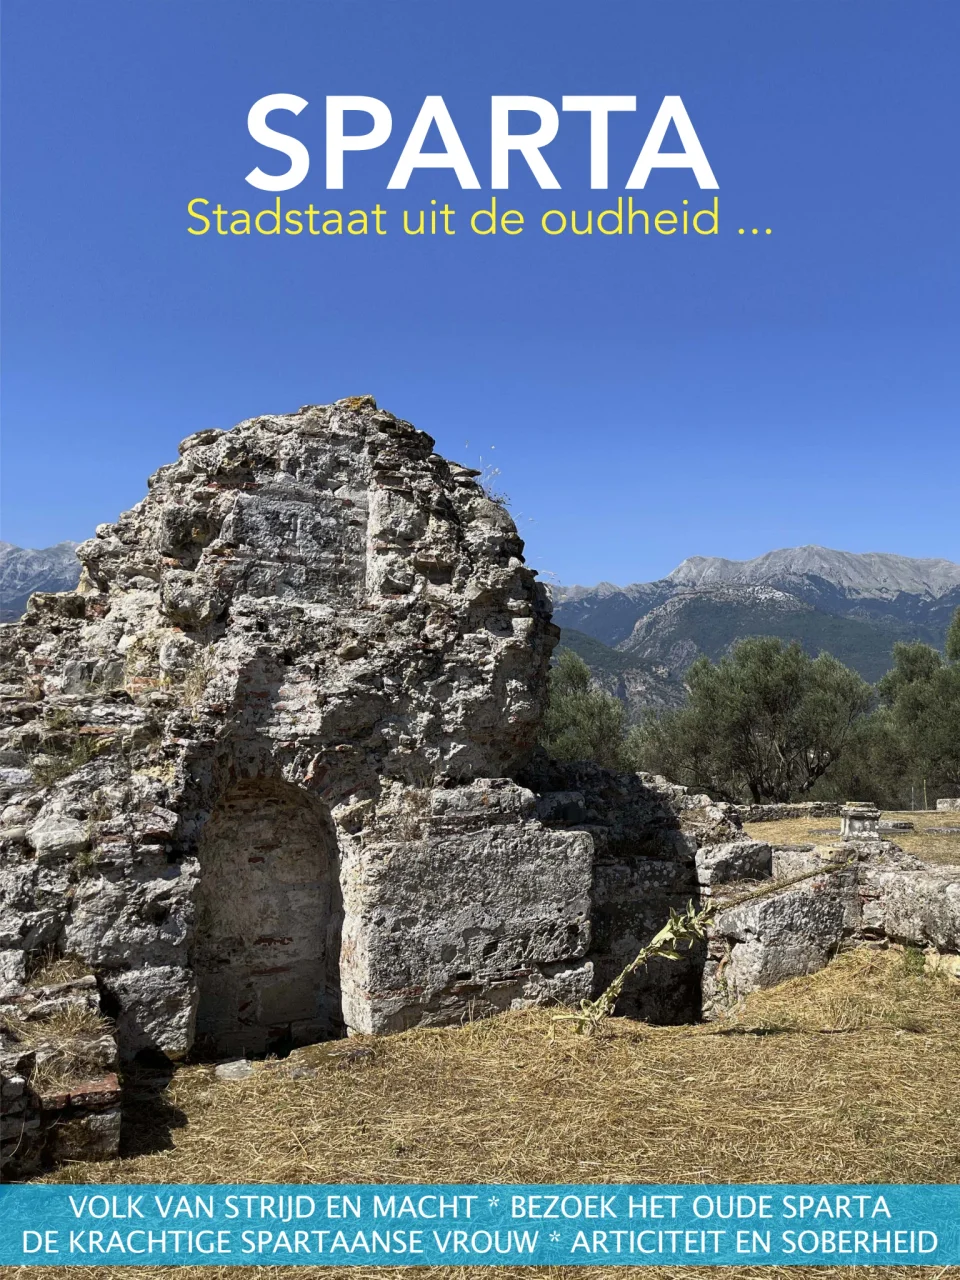 Sparta Stadtstaat uit de Oudheid